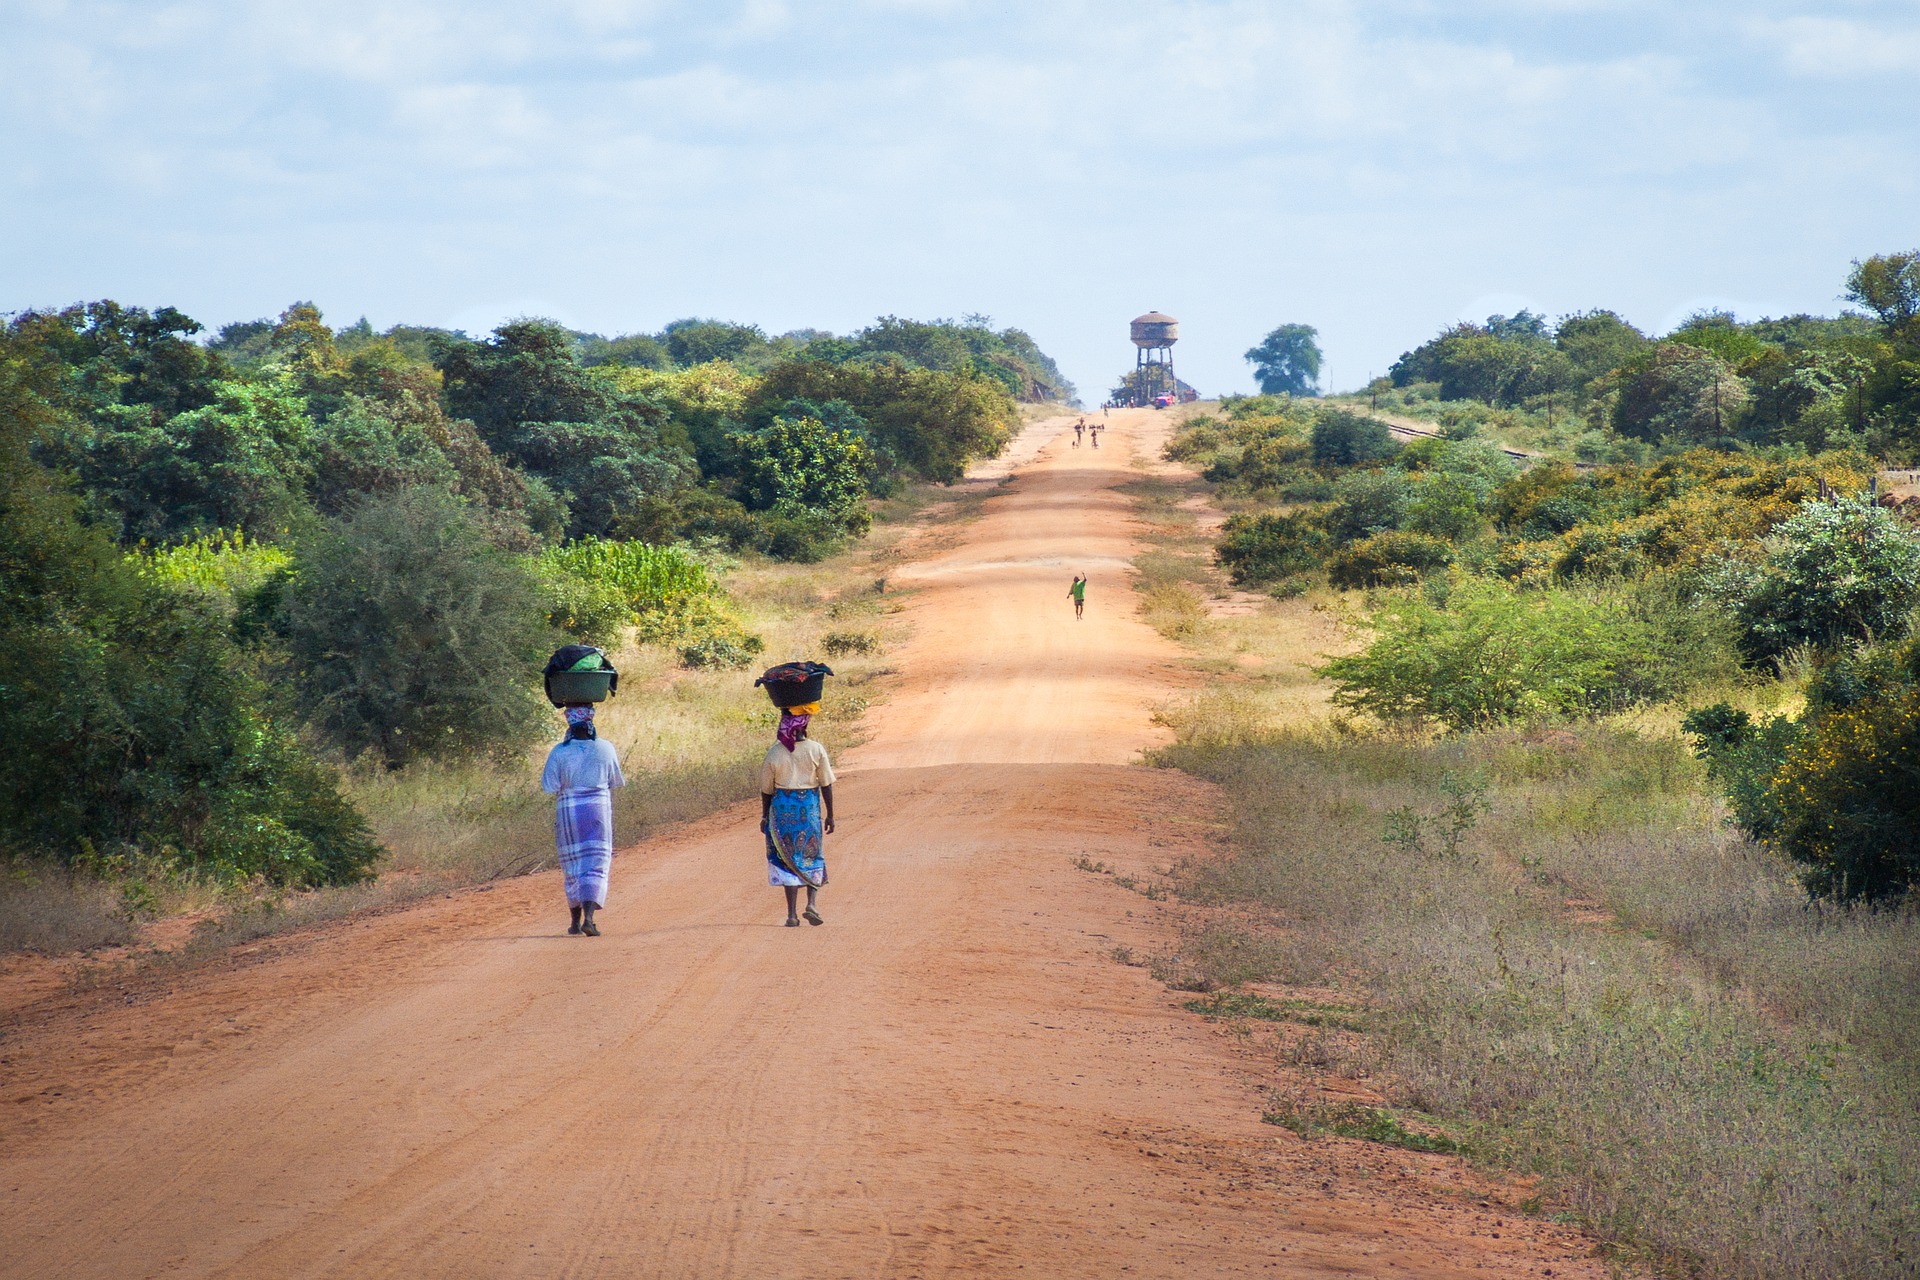 Oasfalterad väg på landsbygden i Moçambique. Två kvinnor går längs med vägen med korgar på huvudet.